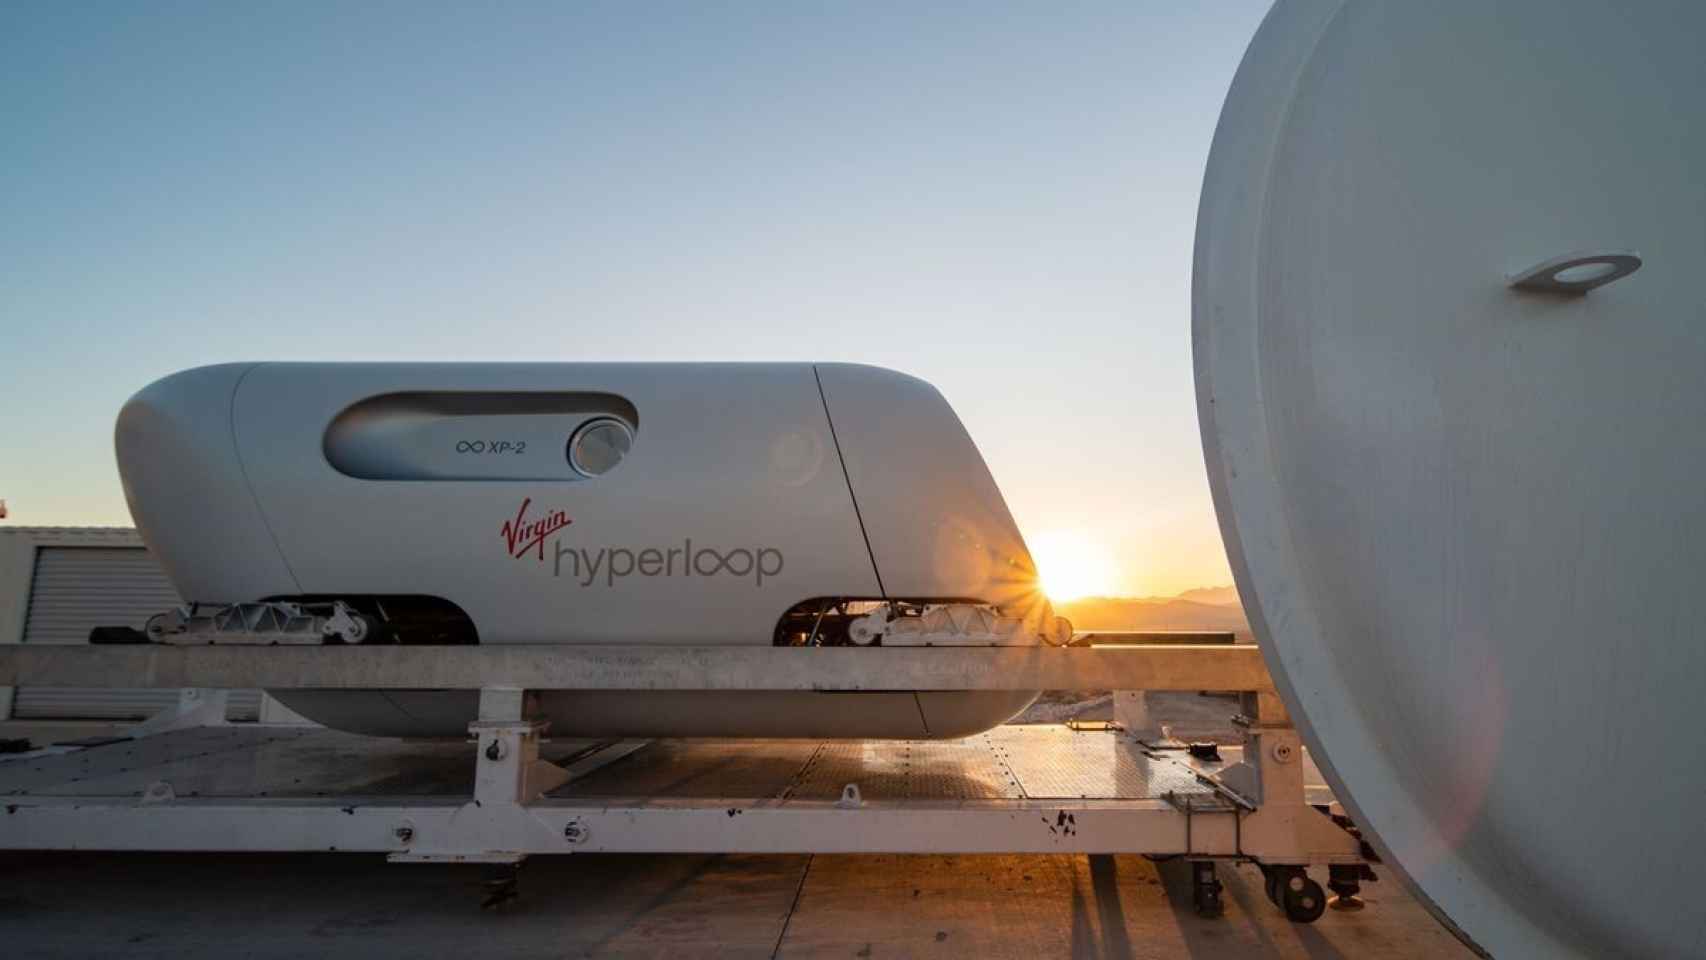 La ápsula XP-2 de Virgin Hyperloop, empleada en las pruebas con pasajeros en Las Vegas en 2020.